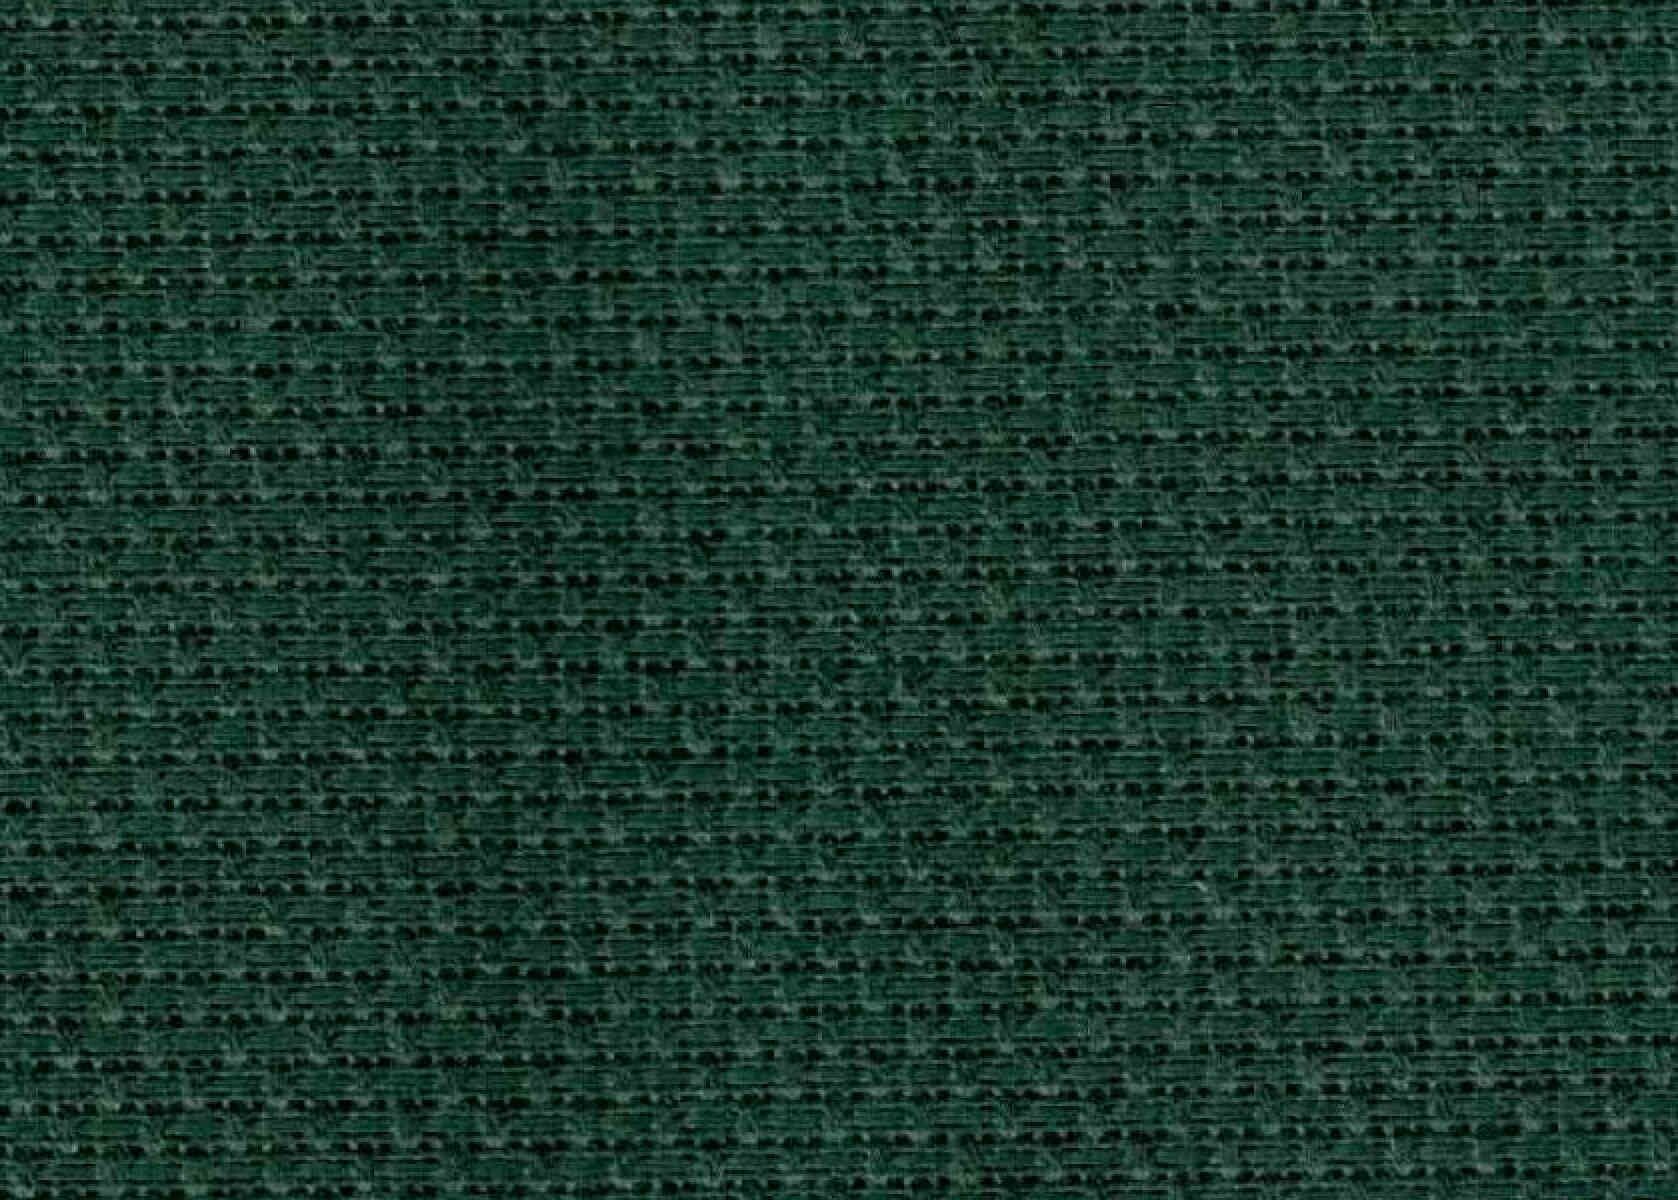 Канва GAMMA Aida14, 100%хлопок, темно-зеленый, 50*50см, 1шт